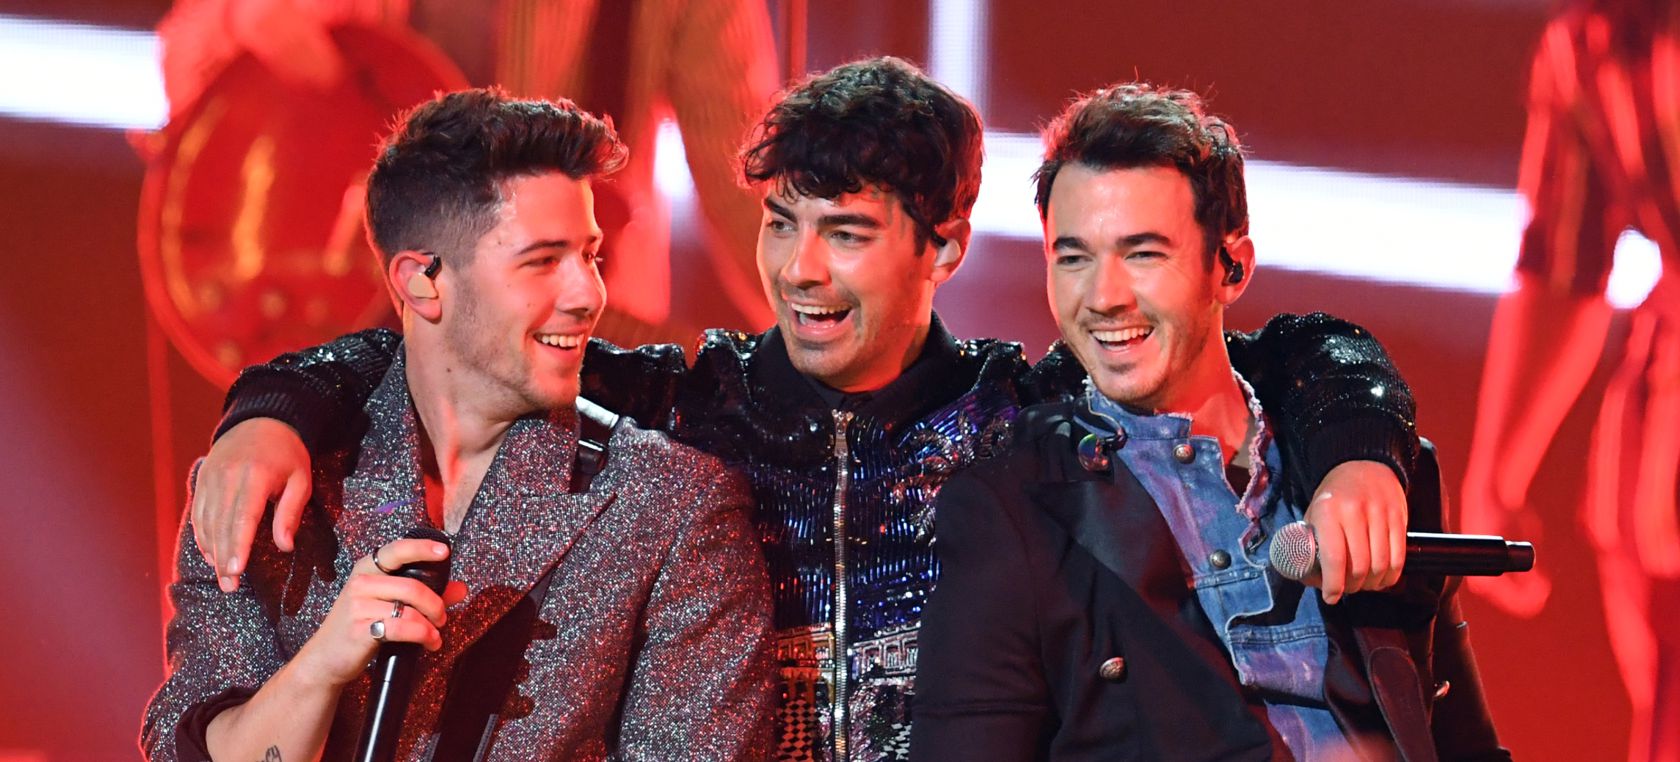 Los Jonas Brothers se unen a Marshmello al ritmo retro de ‘Leave Me Before You’